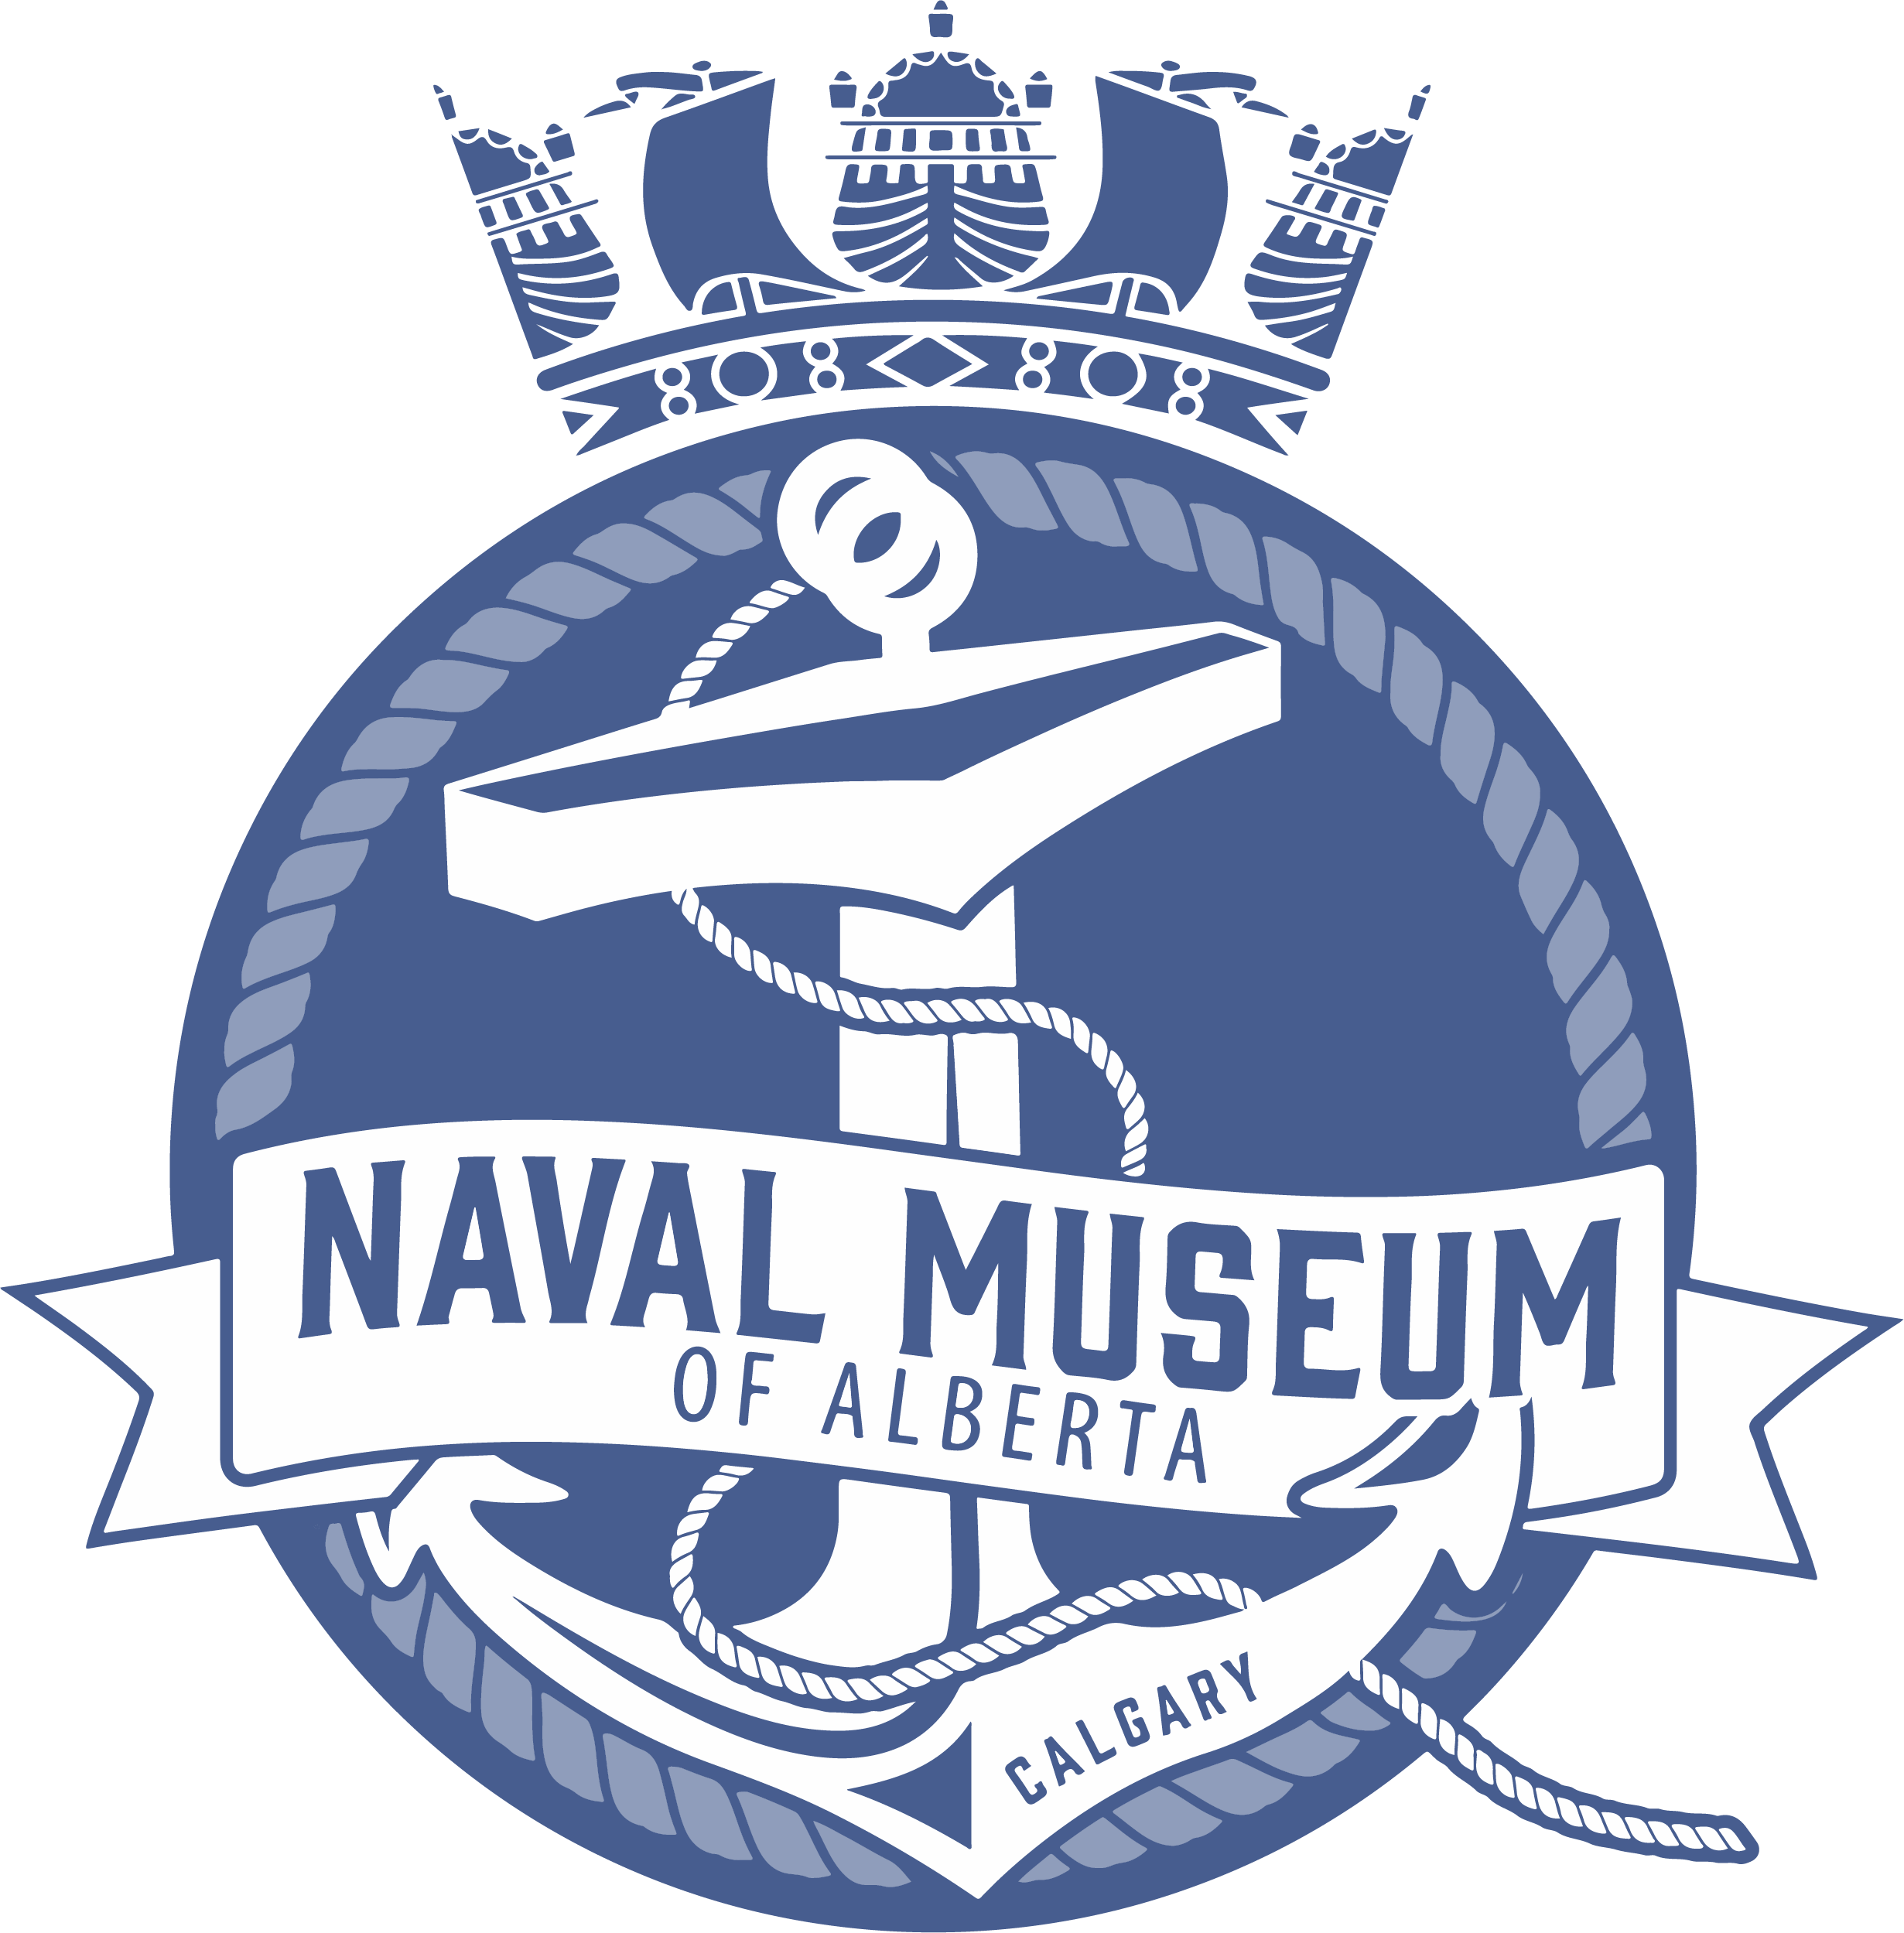 The Naval Museum of Alberta